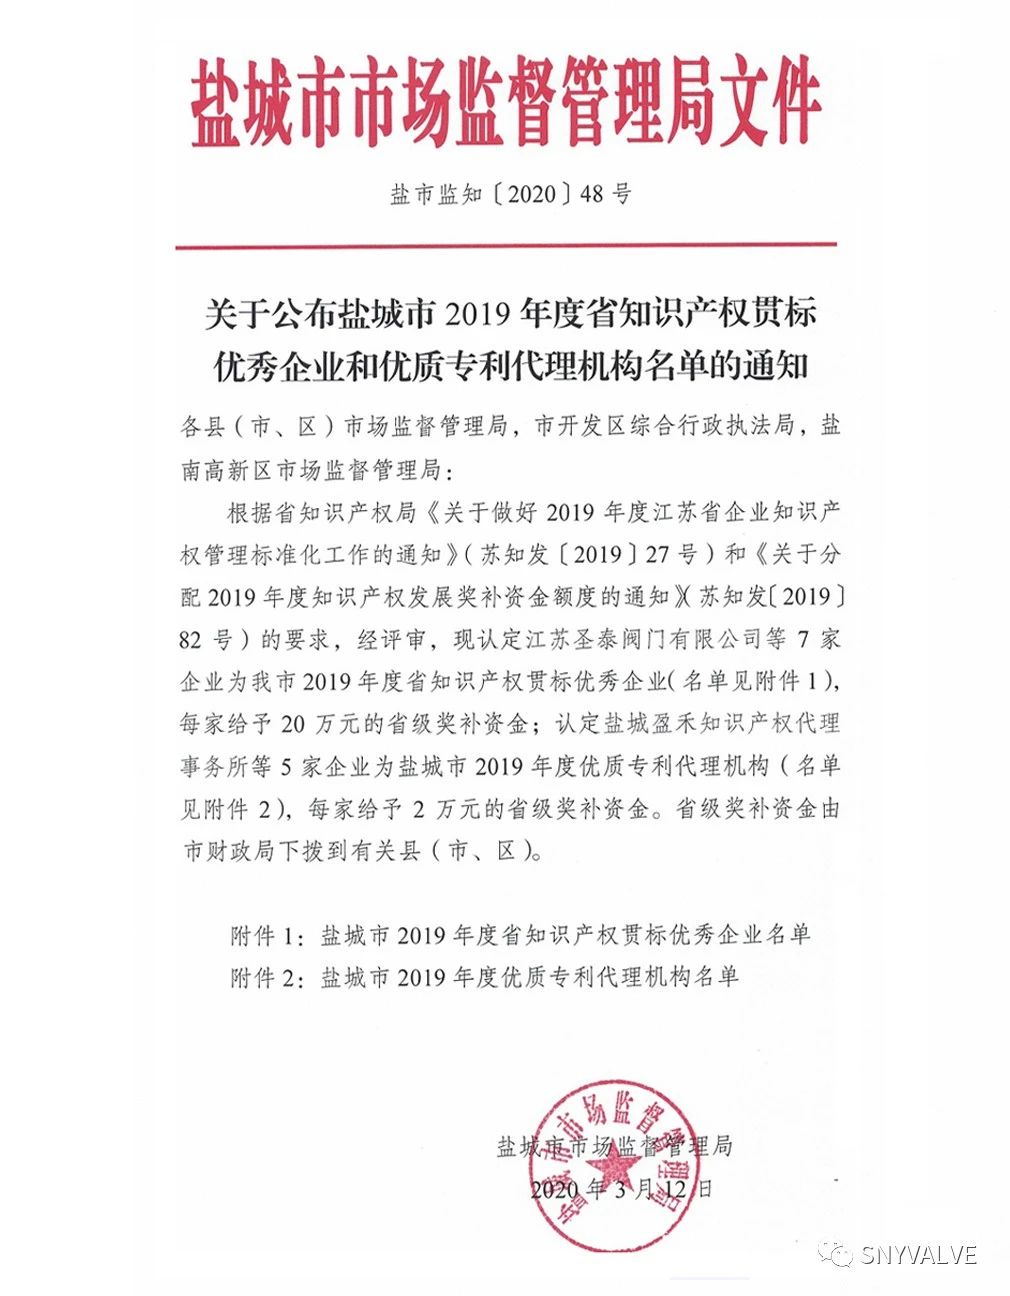 江苏圣泰阀门被评为“2019年省知识产权贯标优秀企业”